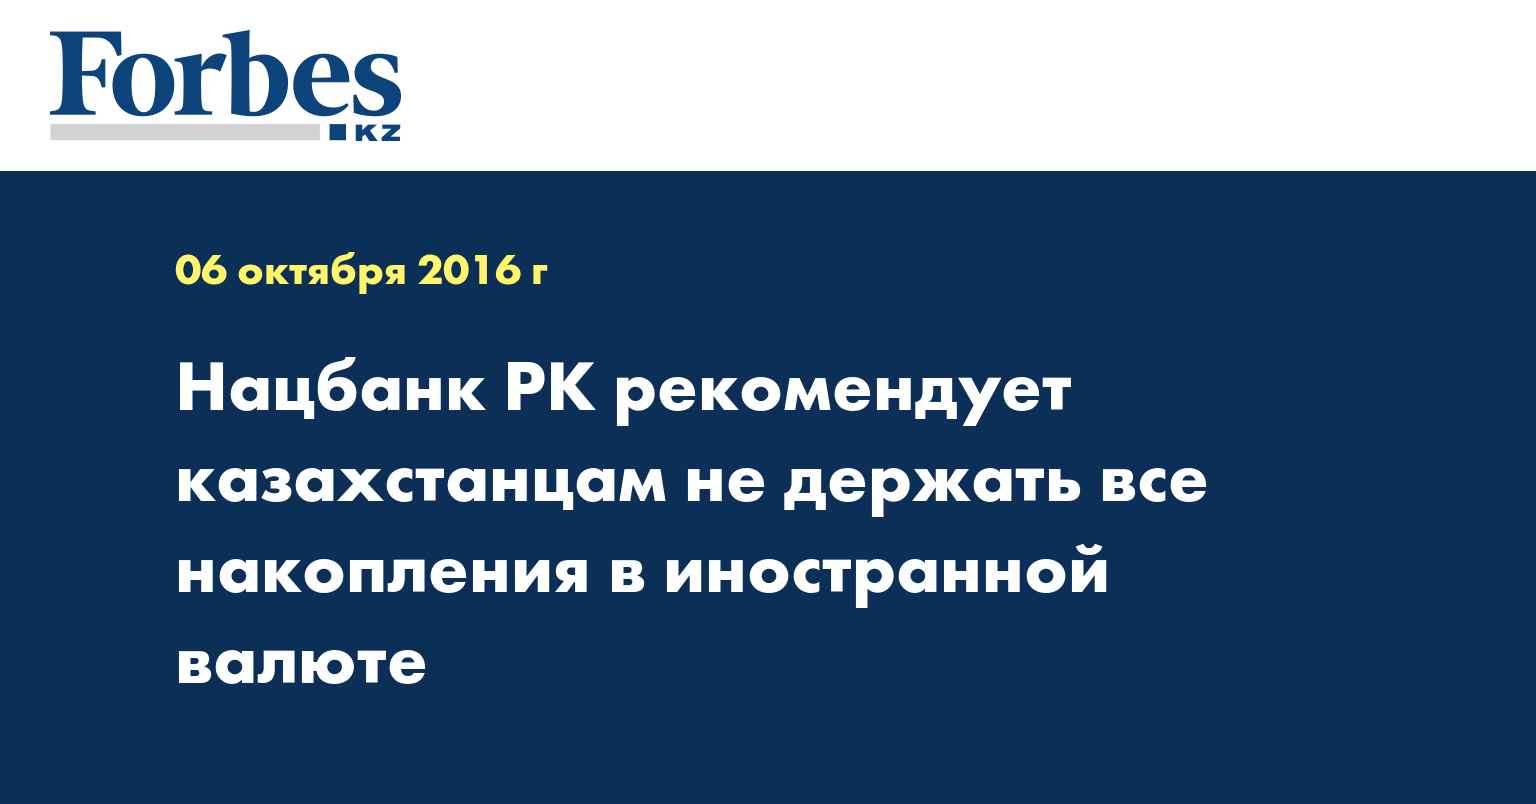 Нацбанк РК рекомендует казахстанцам не держать все накопления в иностранной валюте